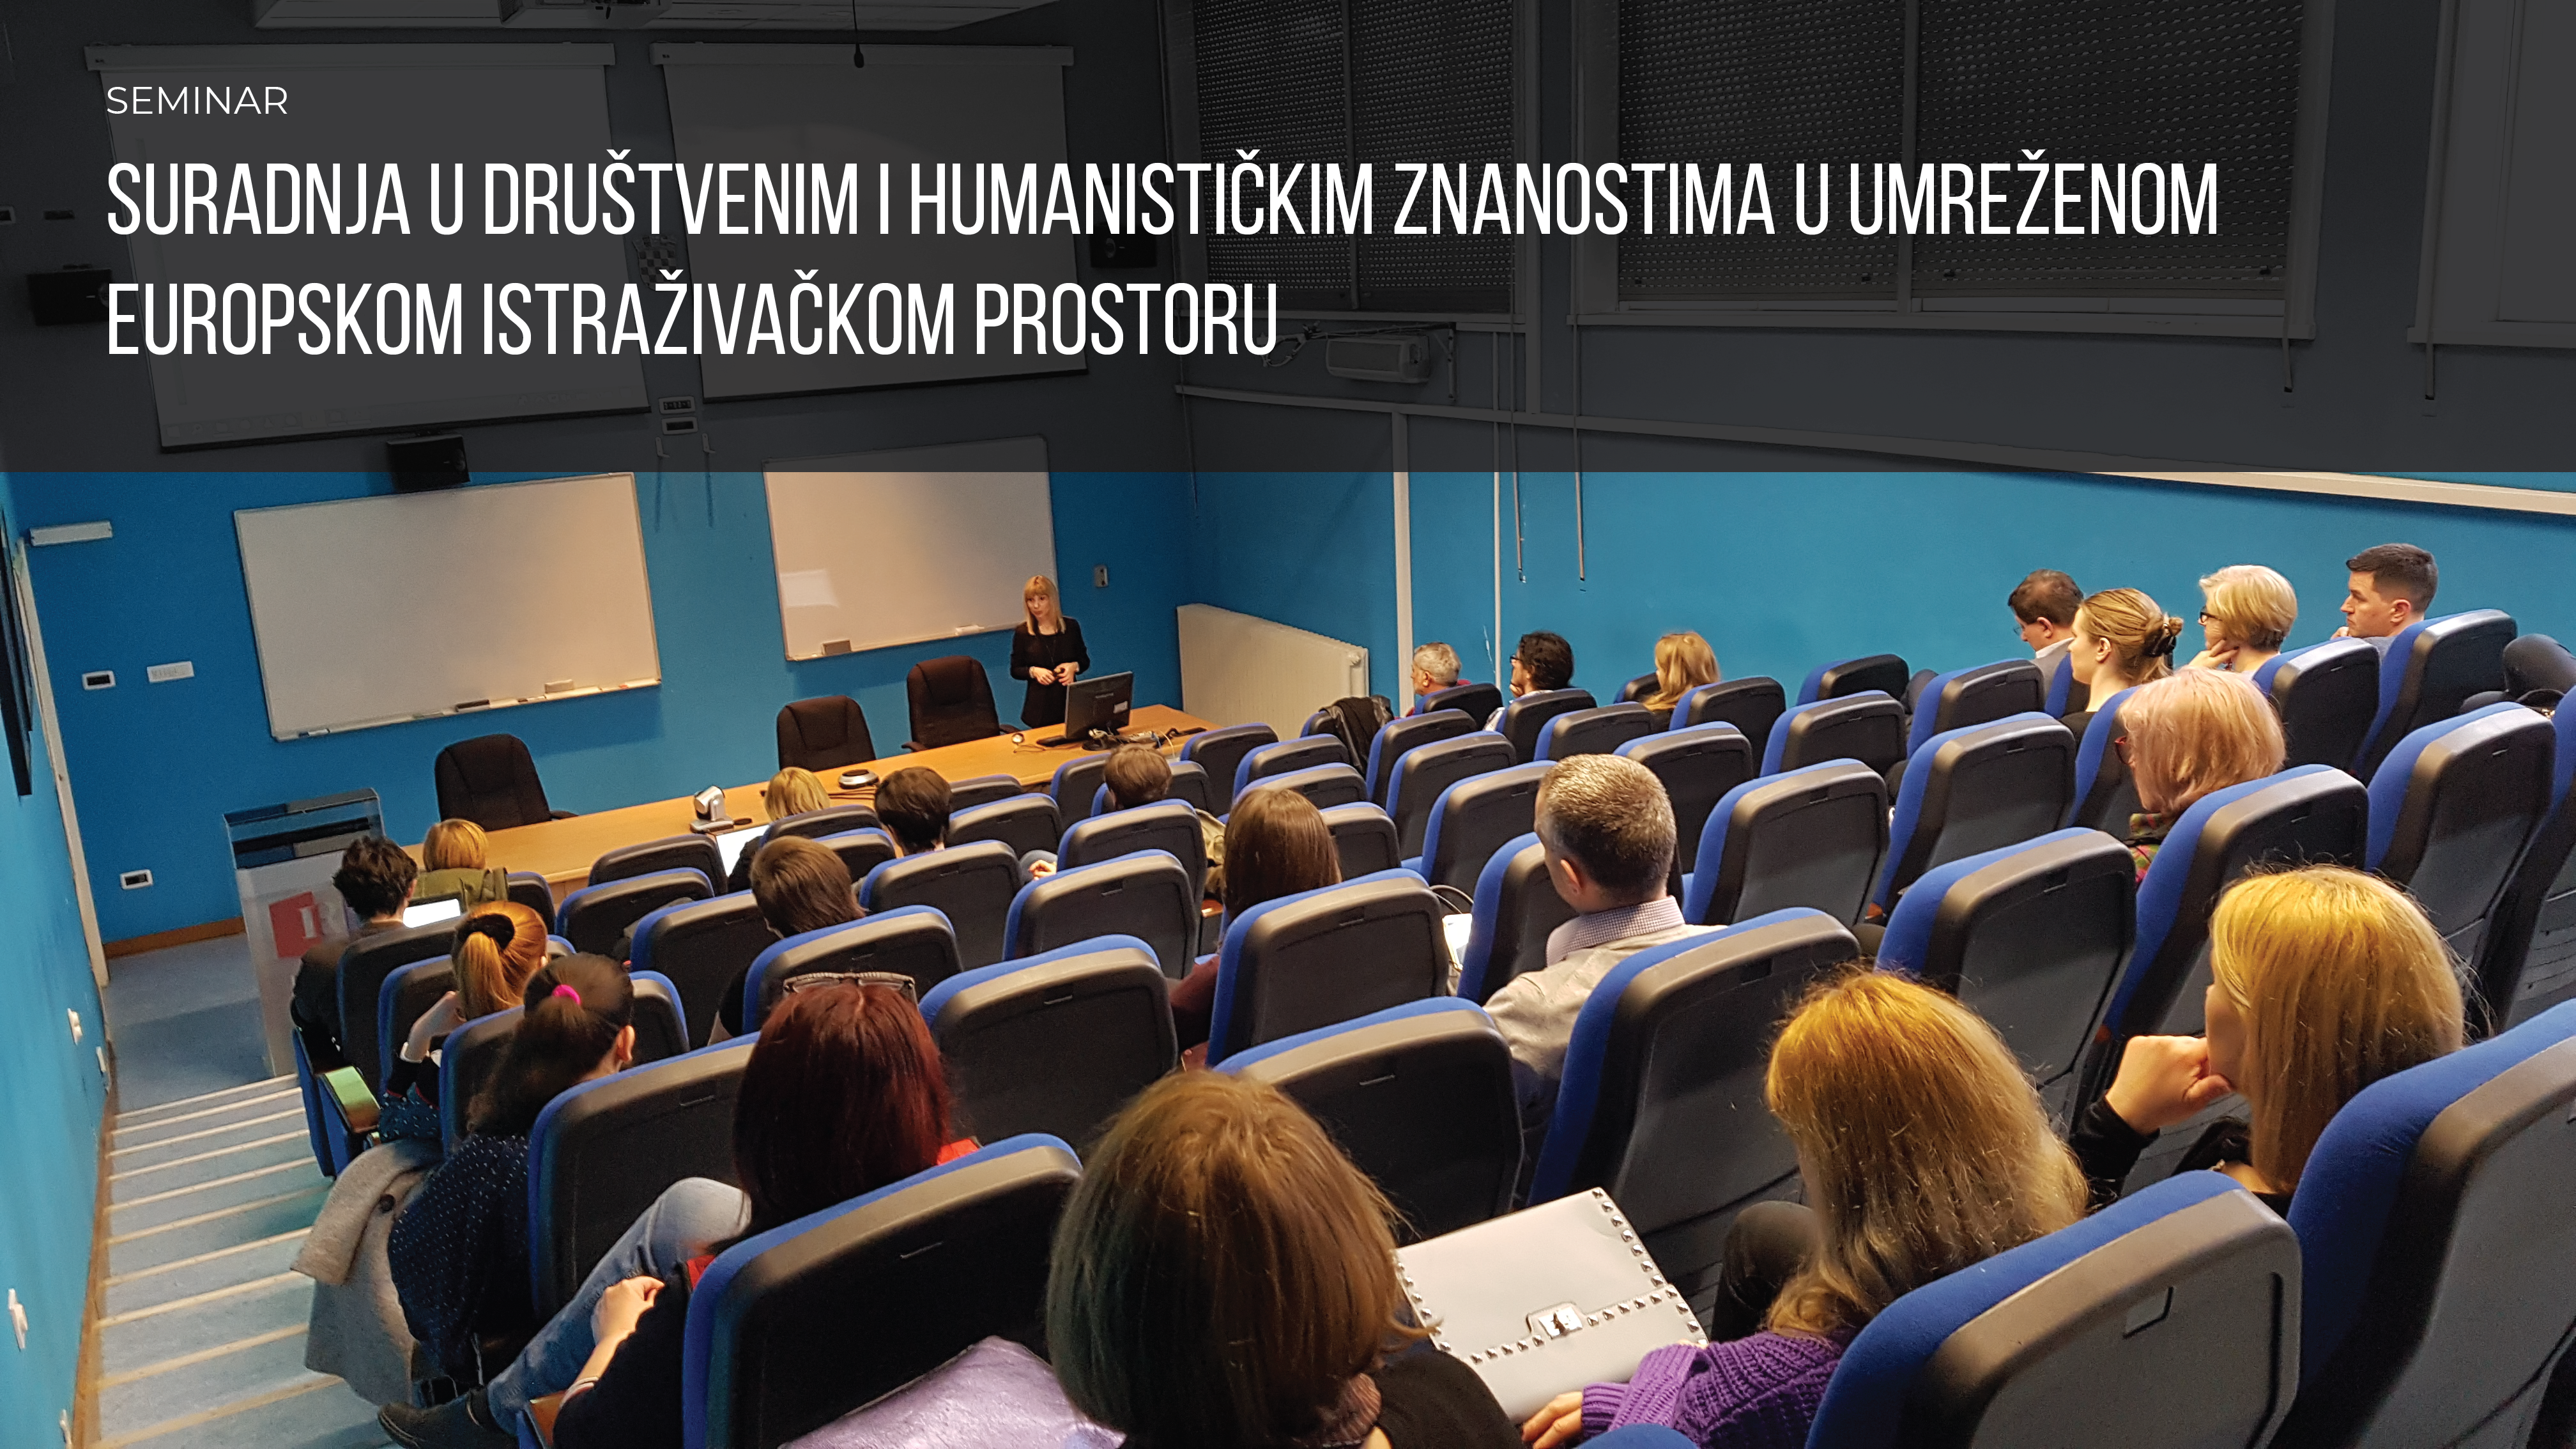 Uspiješno održan seminar "Suradnja u društvenim i humanističkim znanostima u umreženom europskom istraživačkom prostoru"